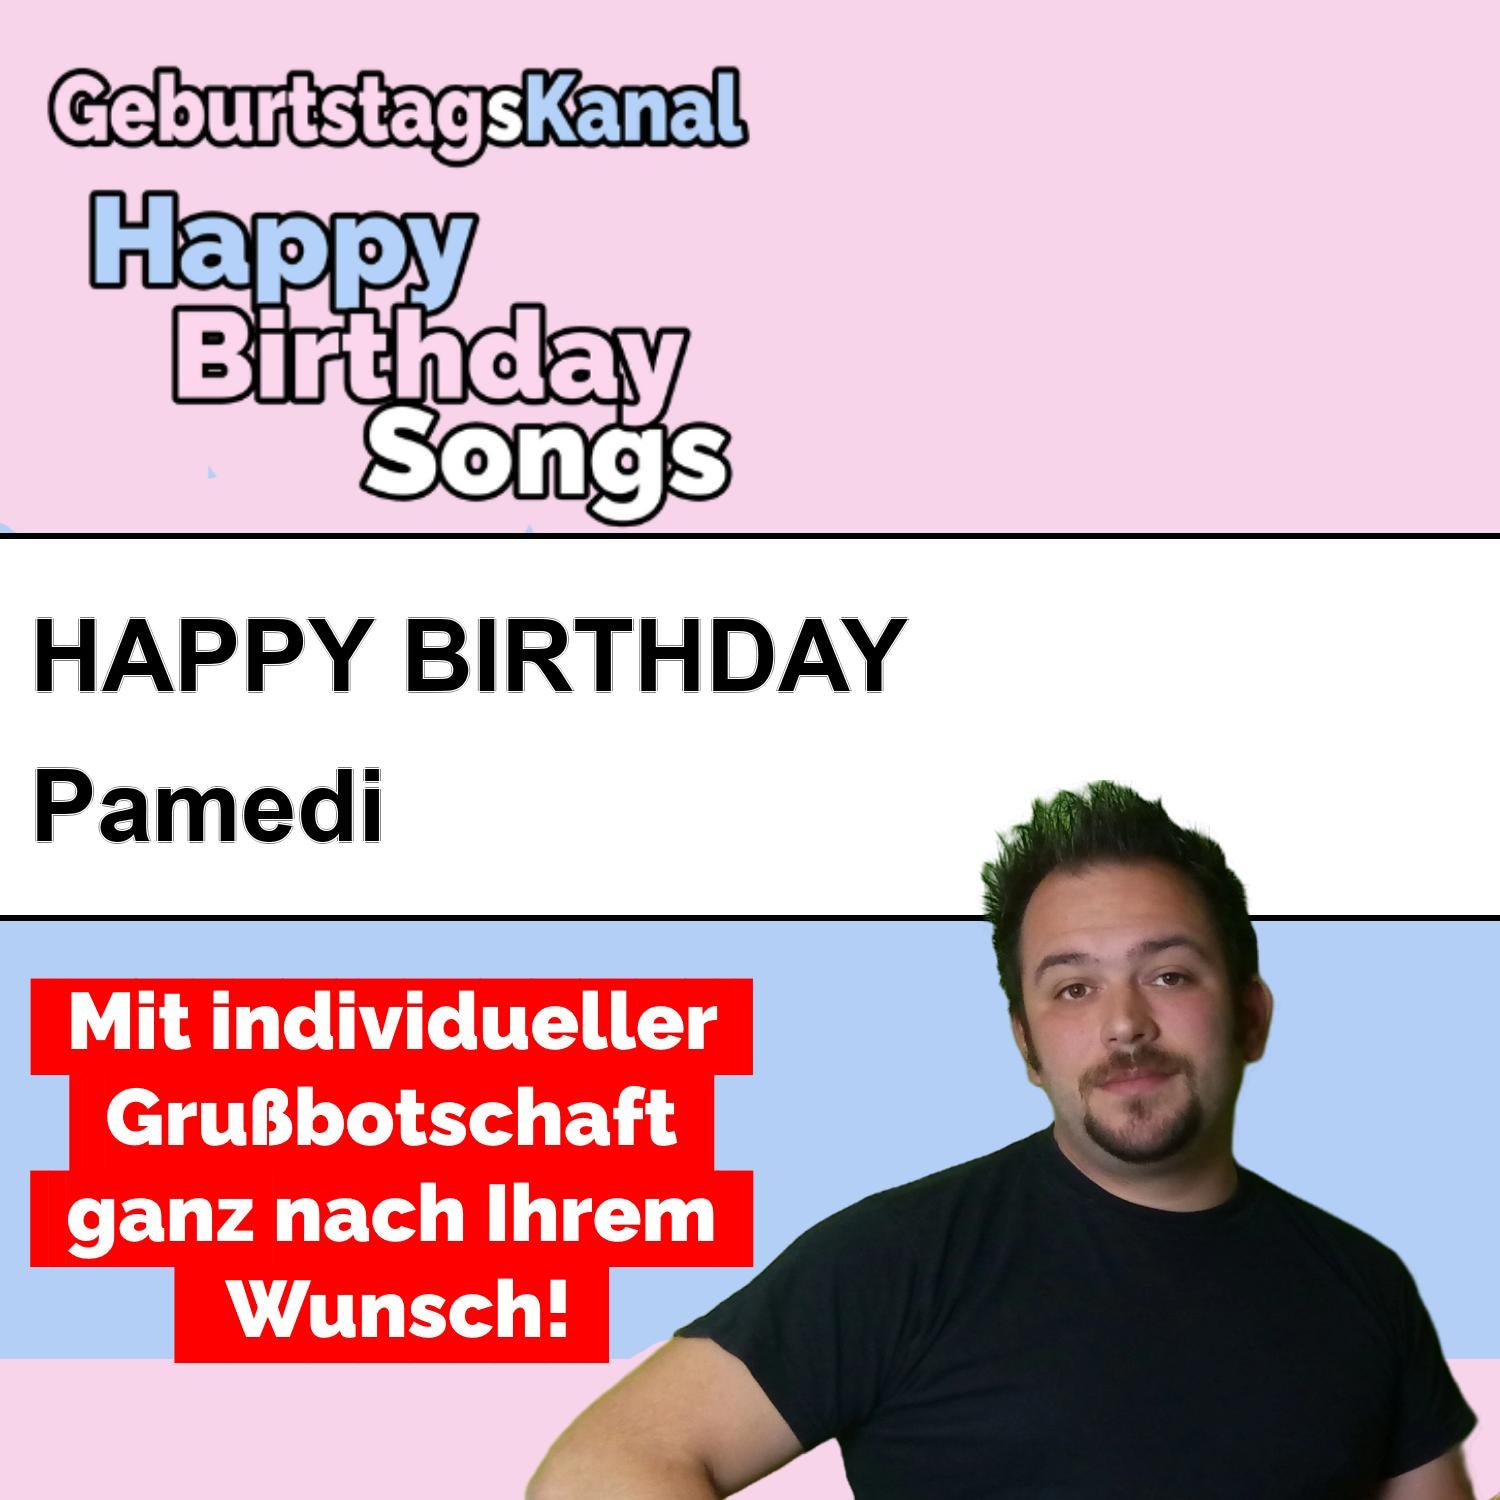 Produktbild Happy Birthday to you Pamedi mit Wunschgrußbotschaft